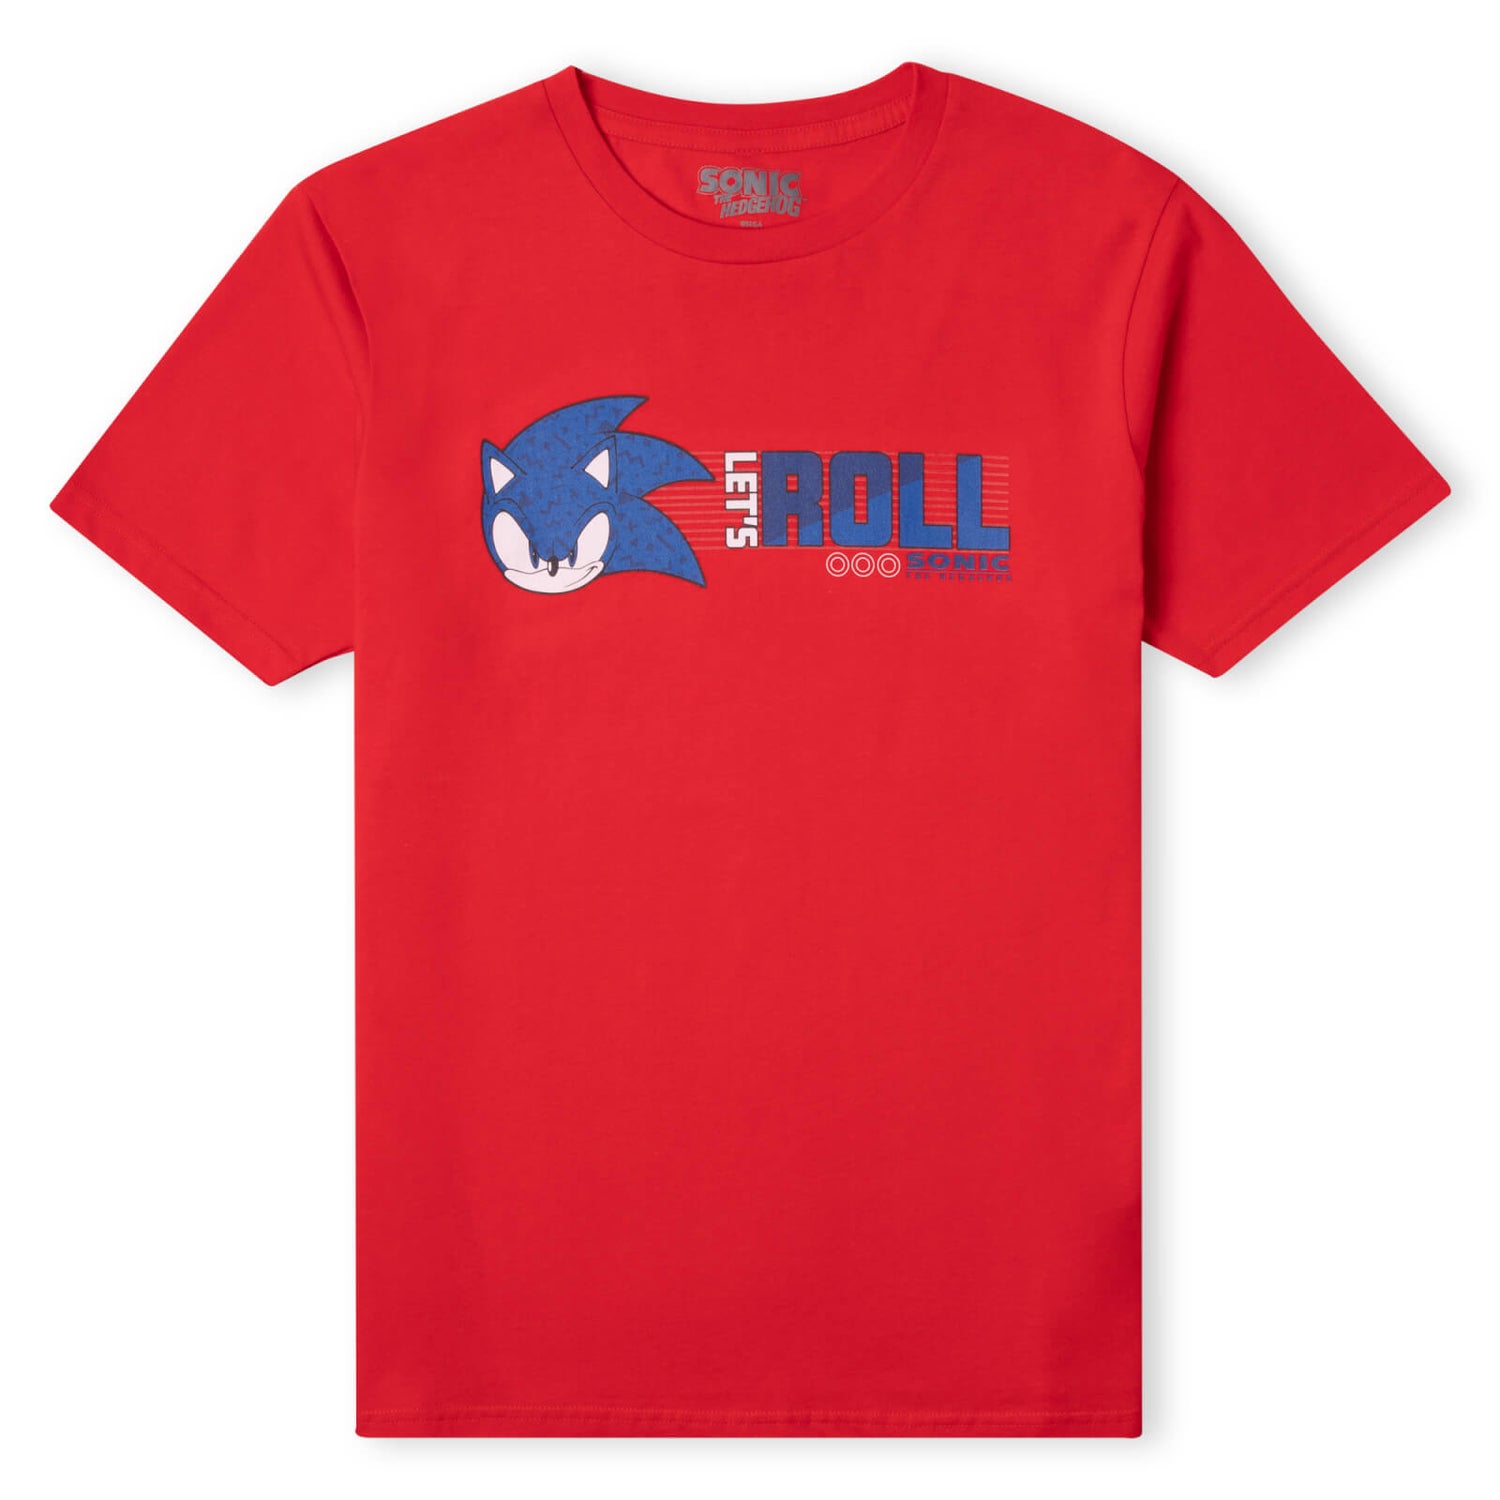 Camiseta The Hedgehog Lets Roll para hombre - Rojo